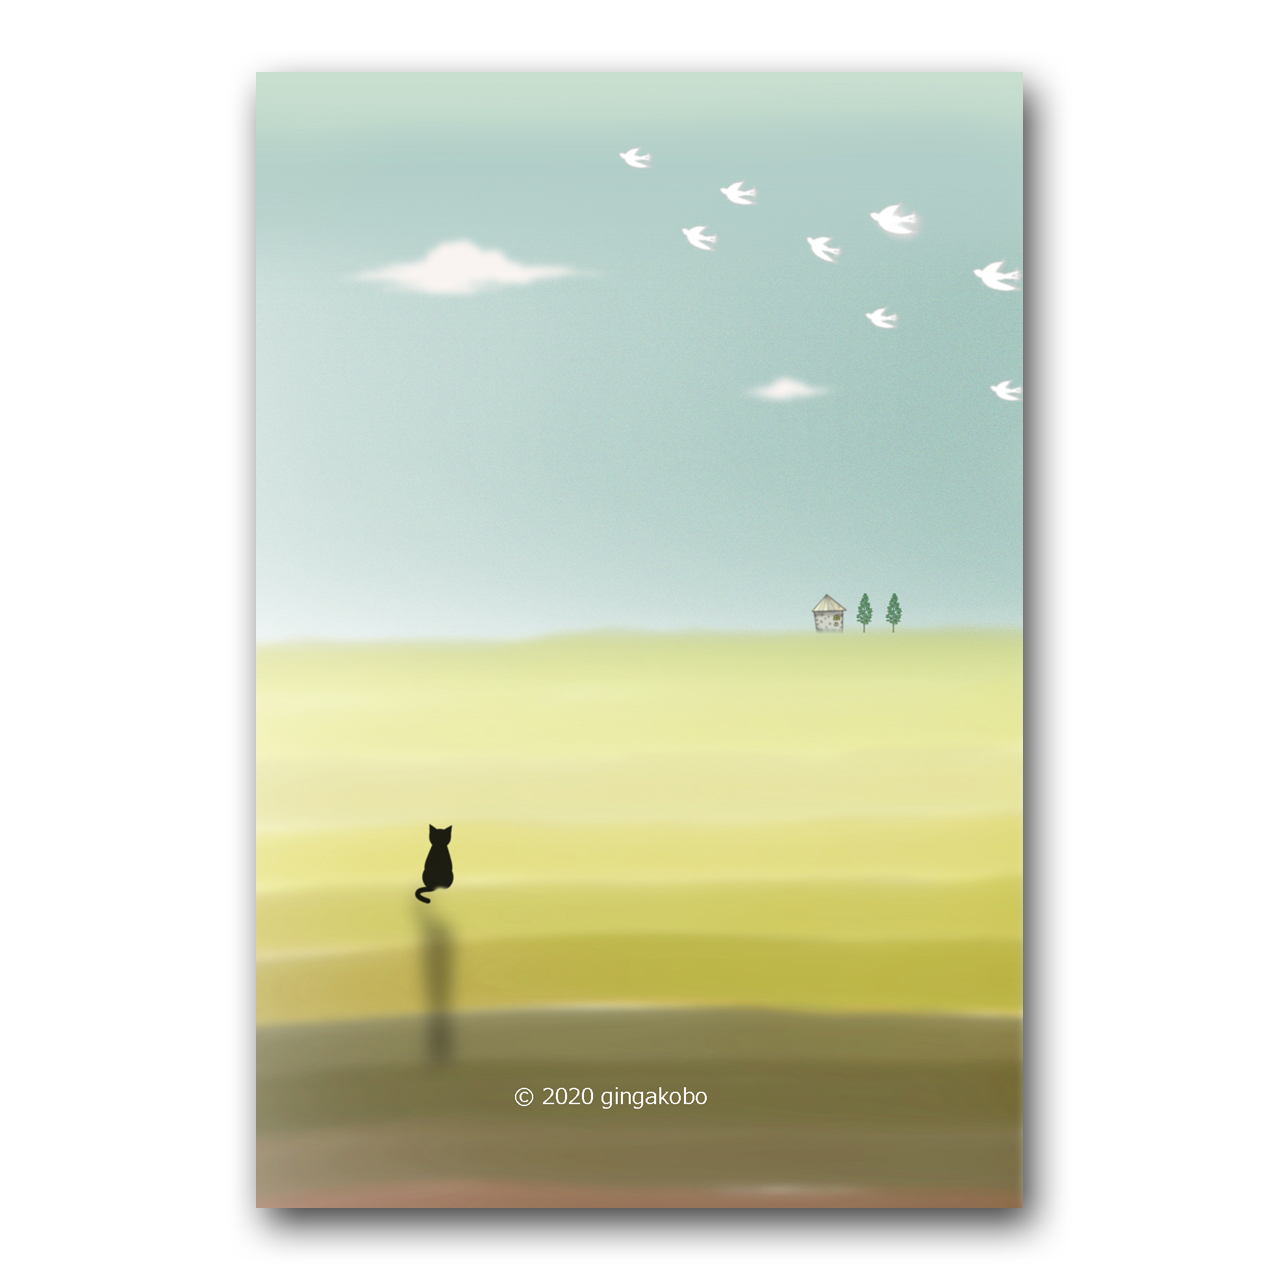 創造的休暇の秋の日 ほっこり癒しのイラストポストカード2枚組 No 1166 Iichi ハンドメイド クラフト作品 手仕事品の通販